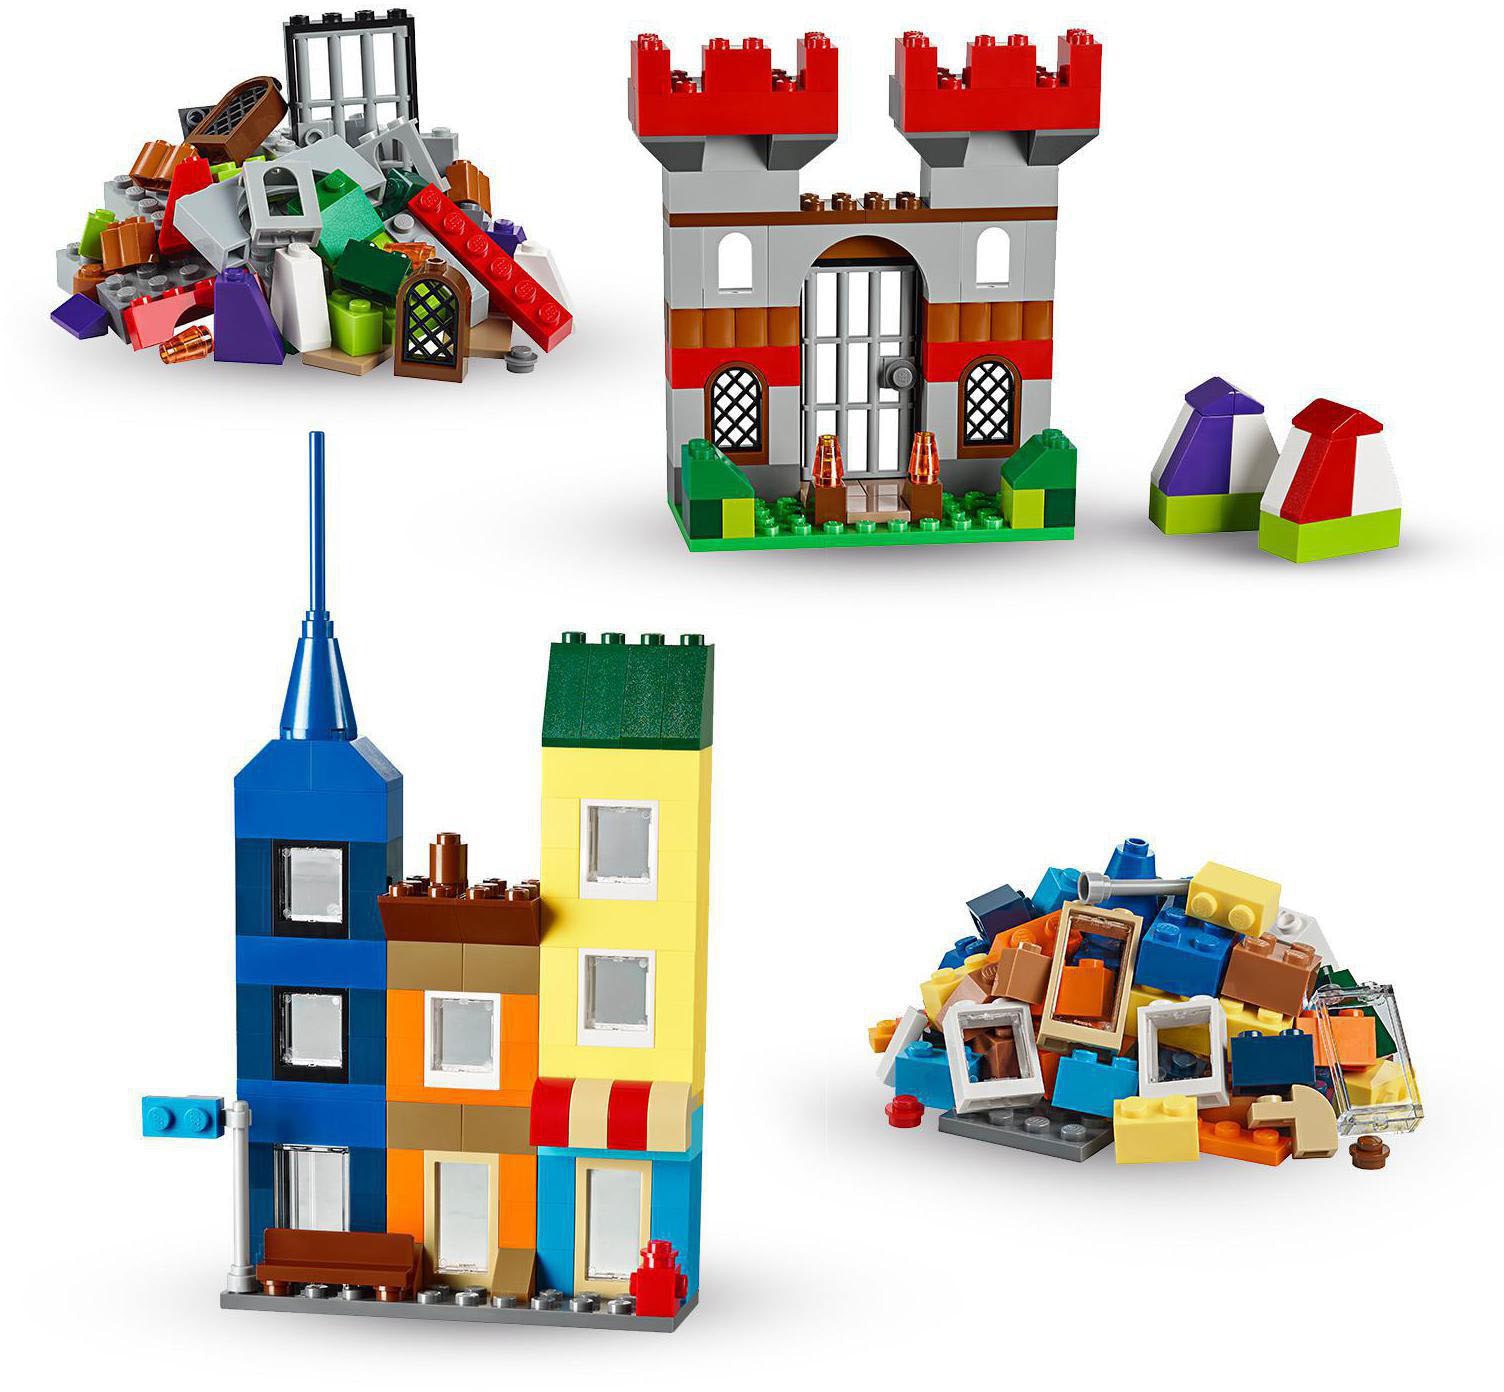 Lego Beleuchtung: Vier LED-Ideen für kleine und große Sets